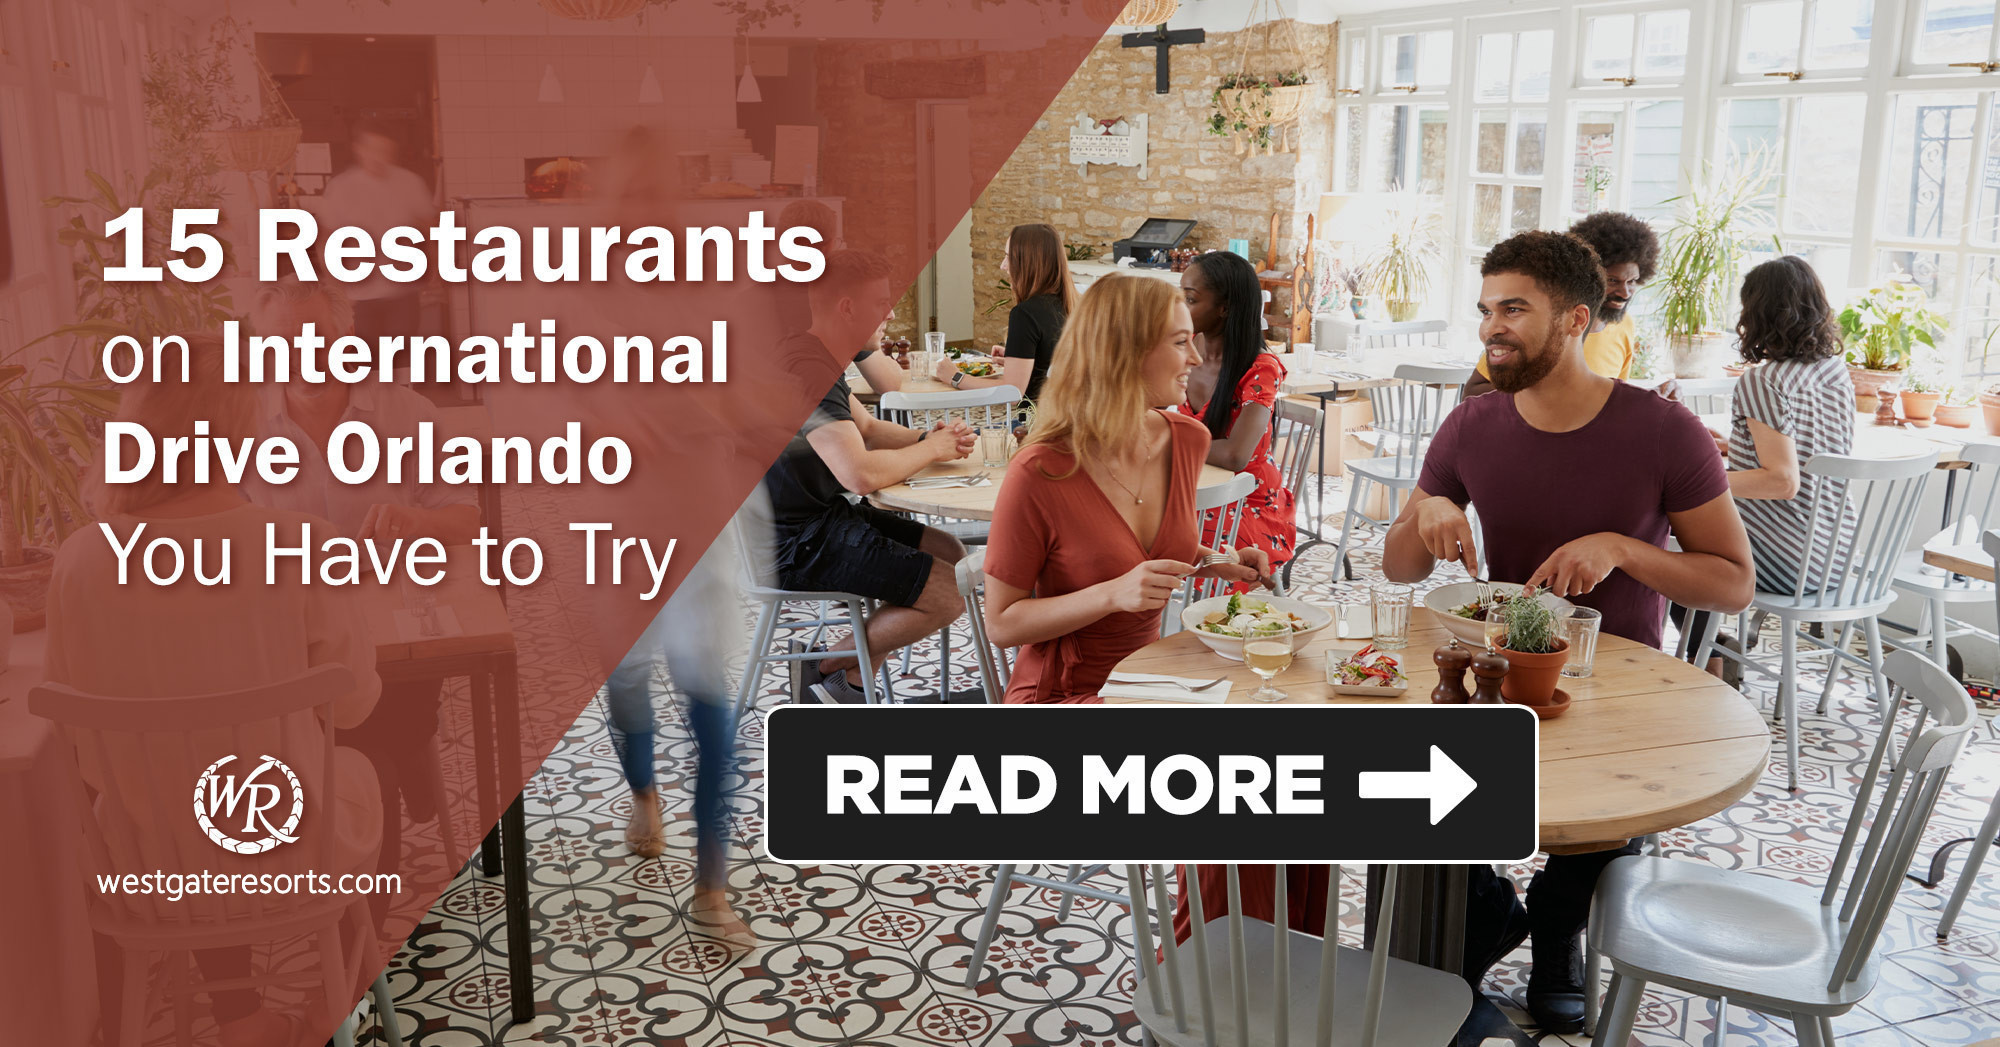 15 restaurantes en International Drive Orlando que tienes que probar | Guía de restaurantes I Drive